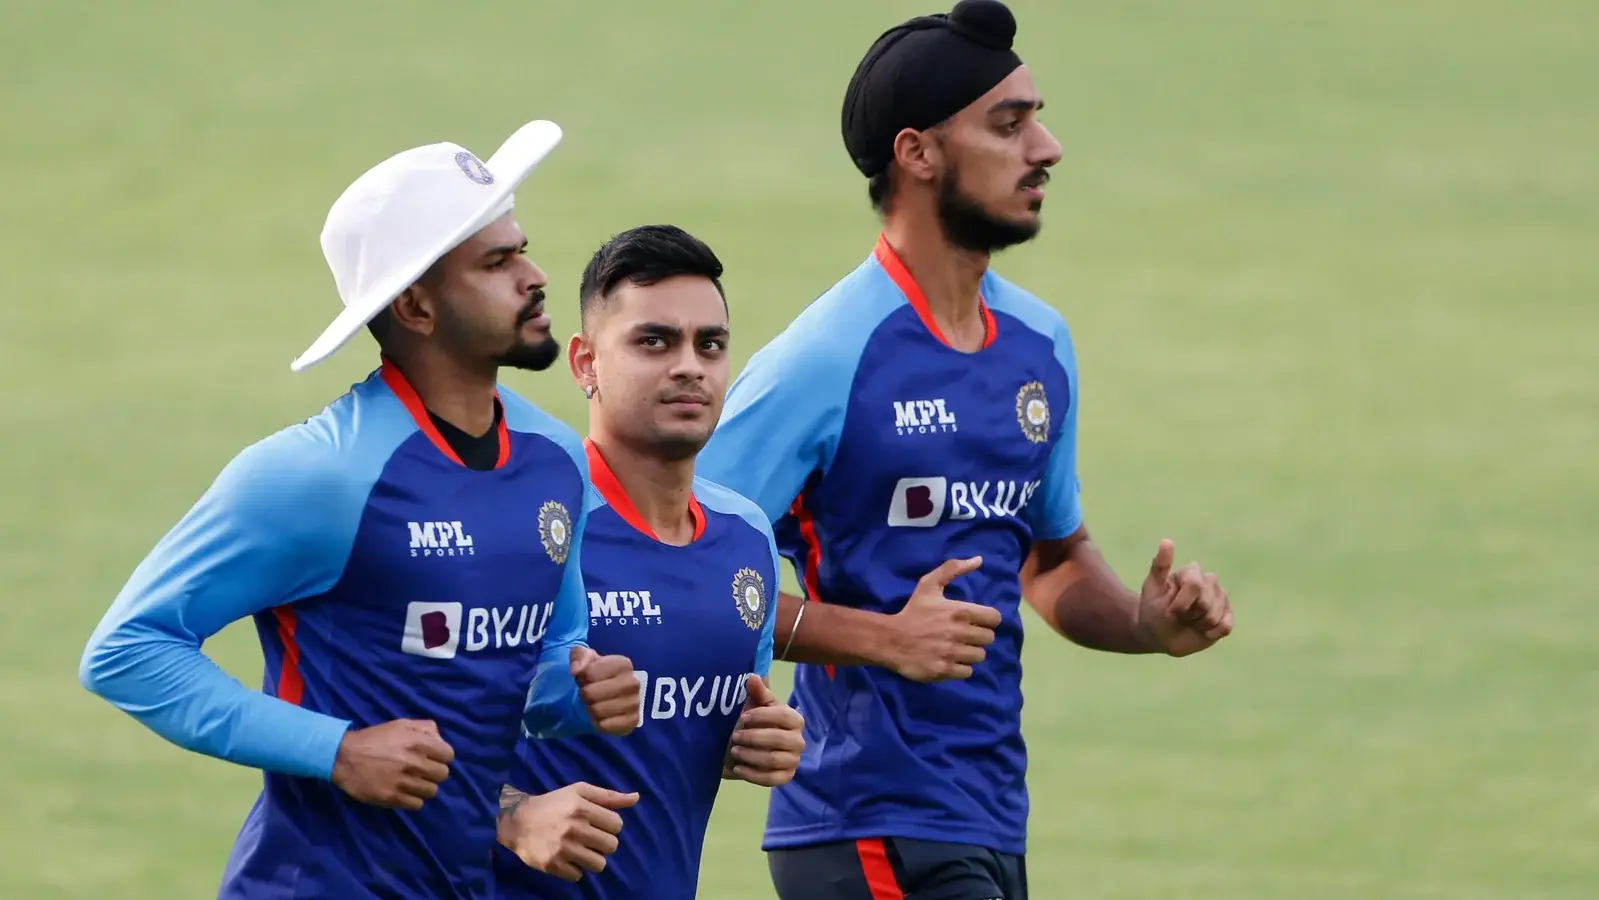  इंडिया प्रेडिक्टेड इलेवन: अर्शदीप, त्रिपाठी को दूसरे टी20 में डेब्यू सौंपा जाएगा?  |  क्रिकेट
